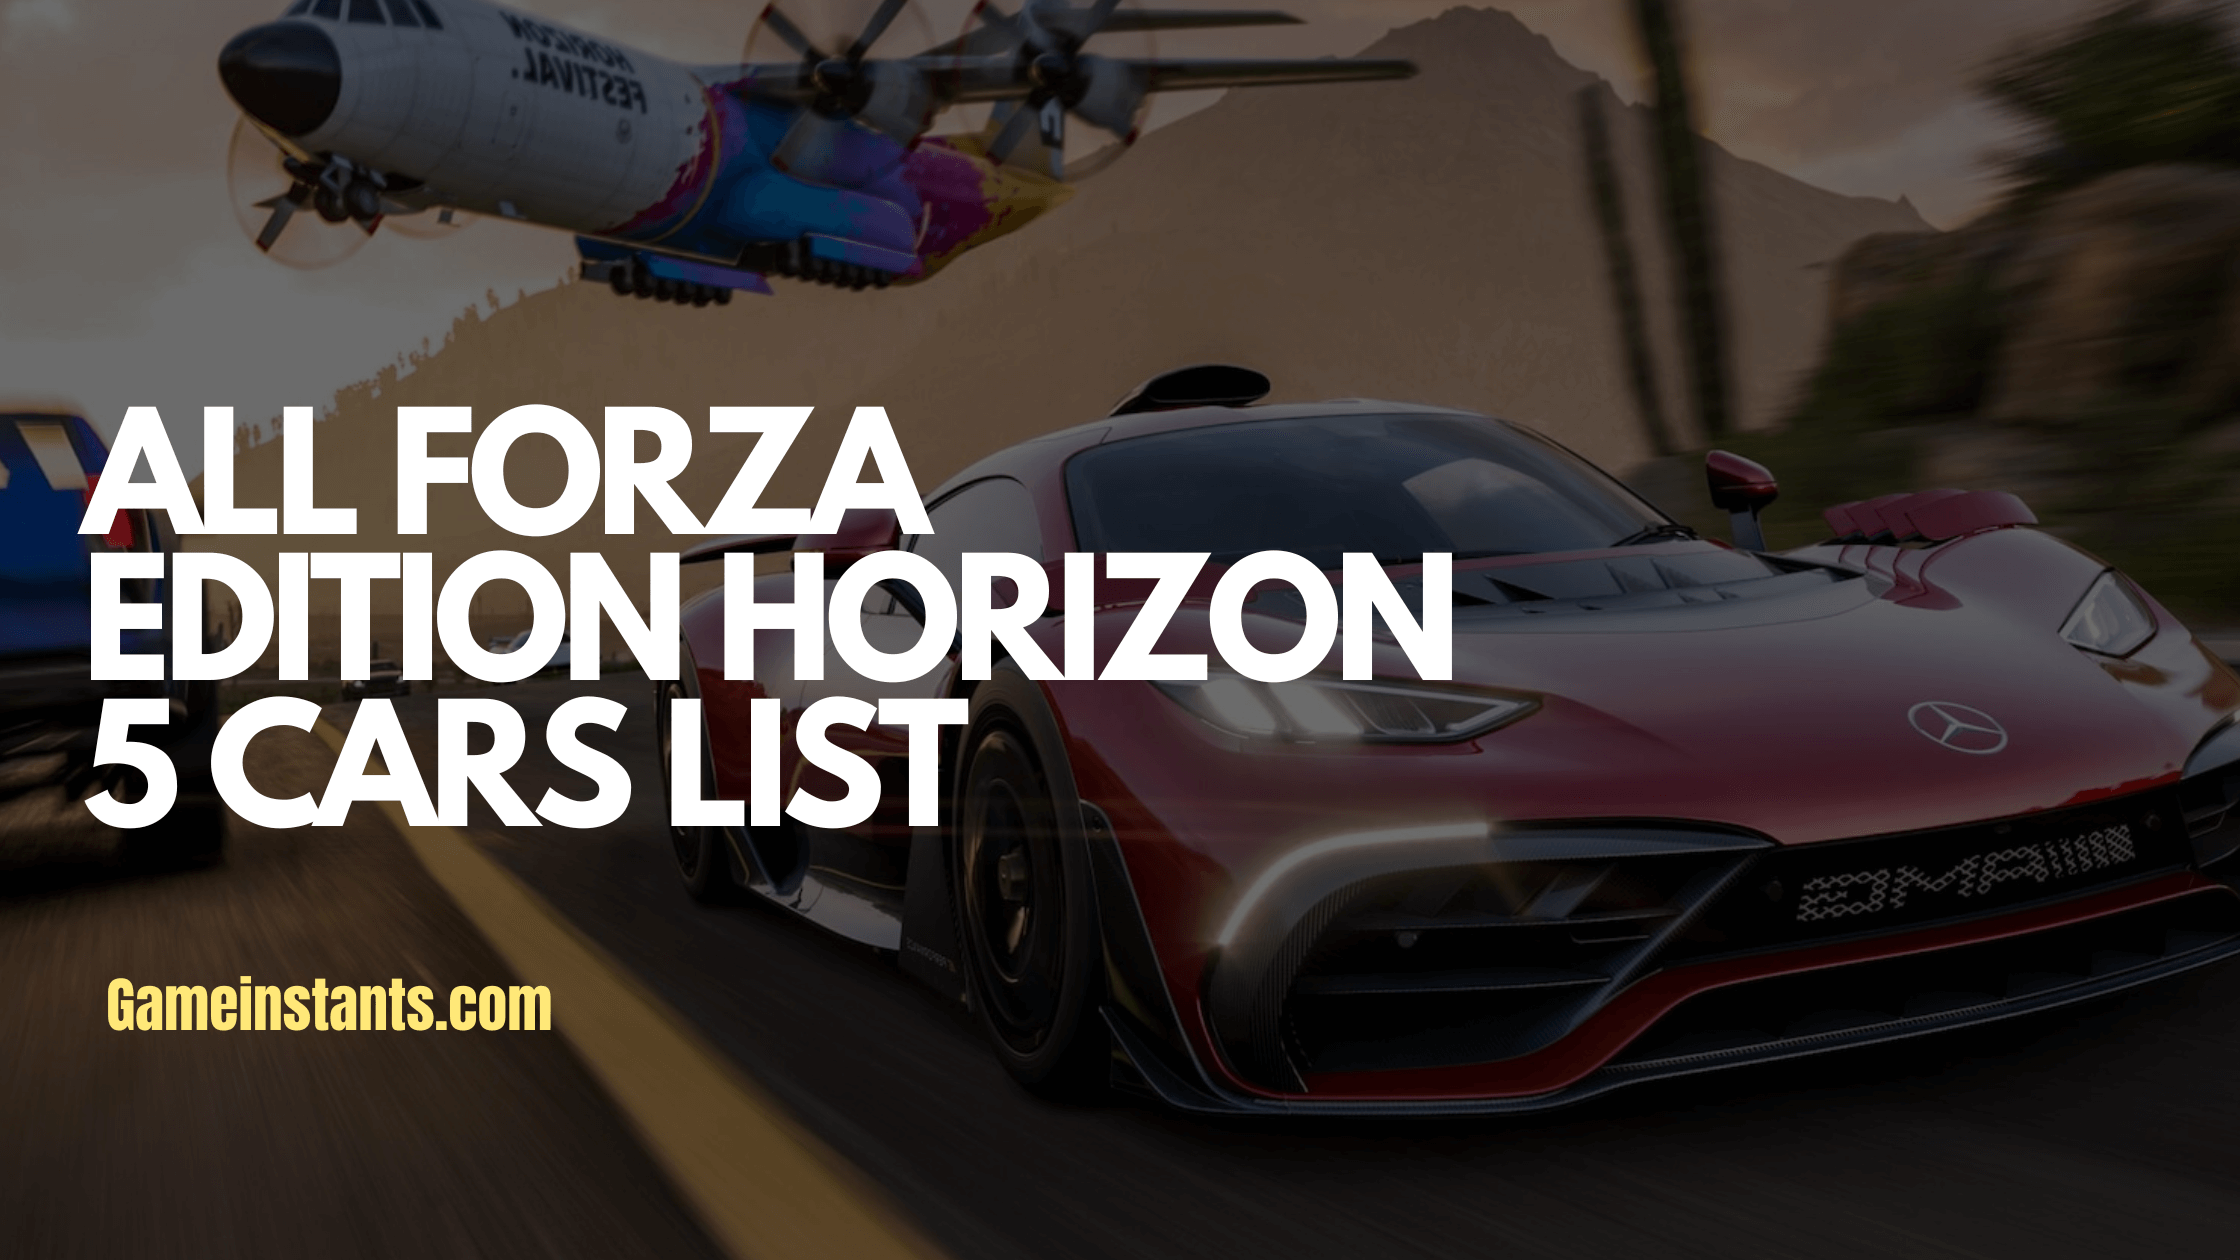 Forza Edition Horizon 5 Cars